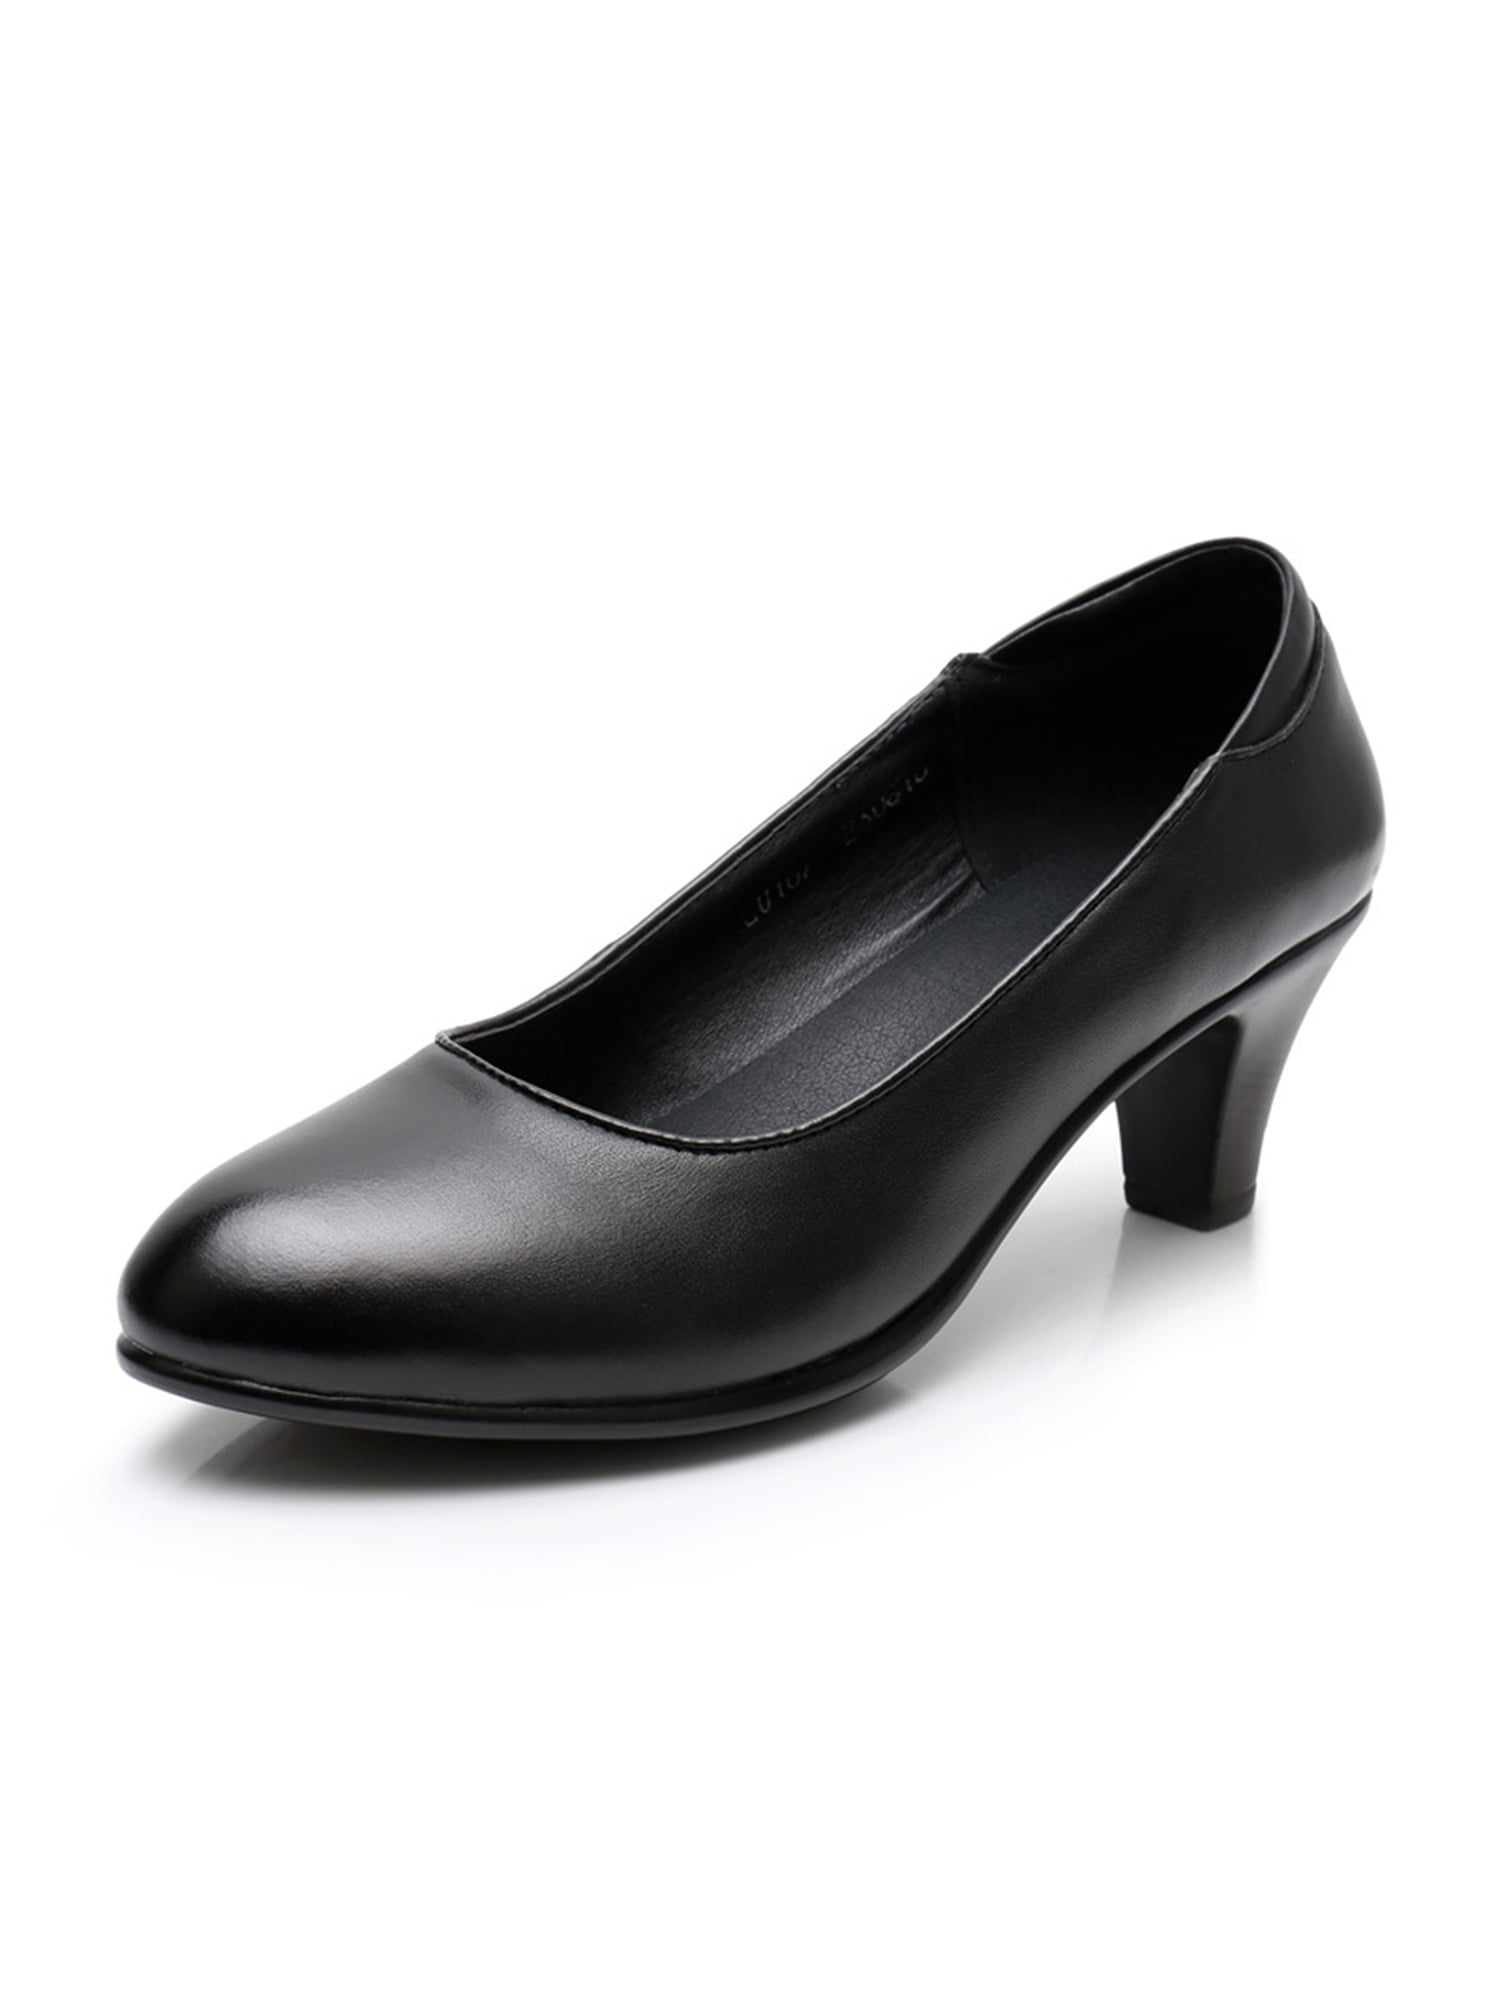 SCHUTZ Callie High Block Heel Black Velvet Formal Shoes Size 9.5B New | Black  block heels, Heels, Block heels